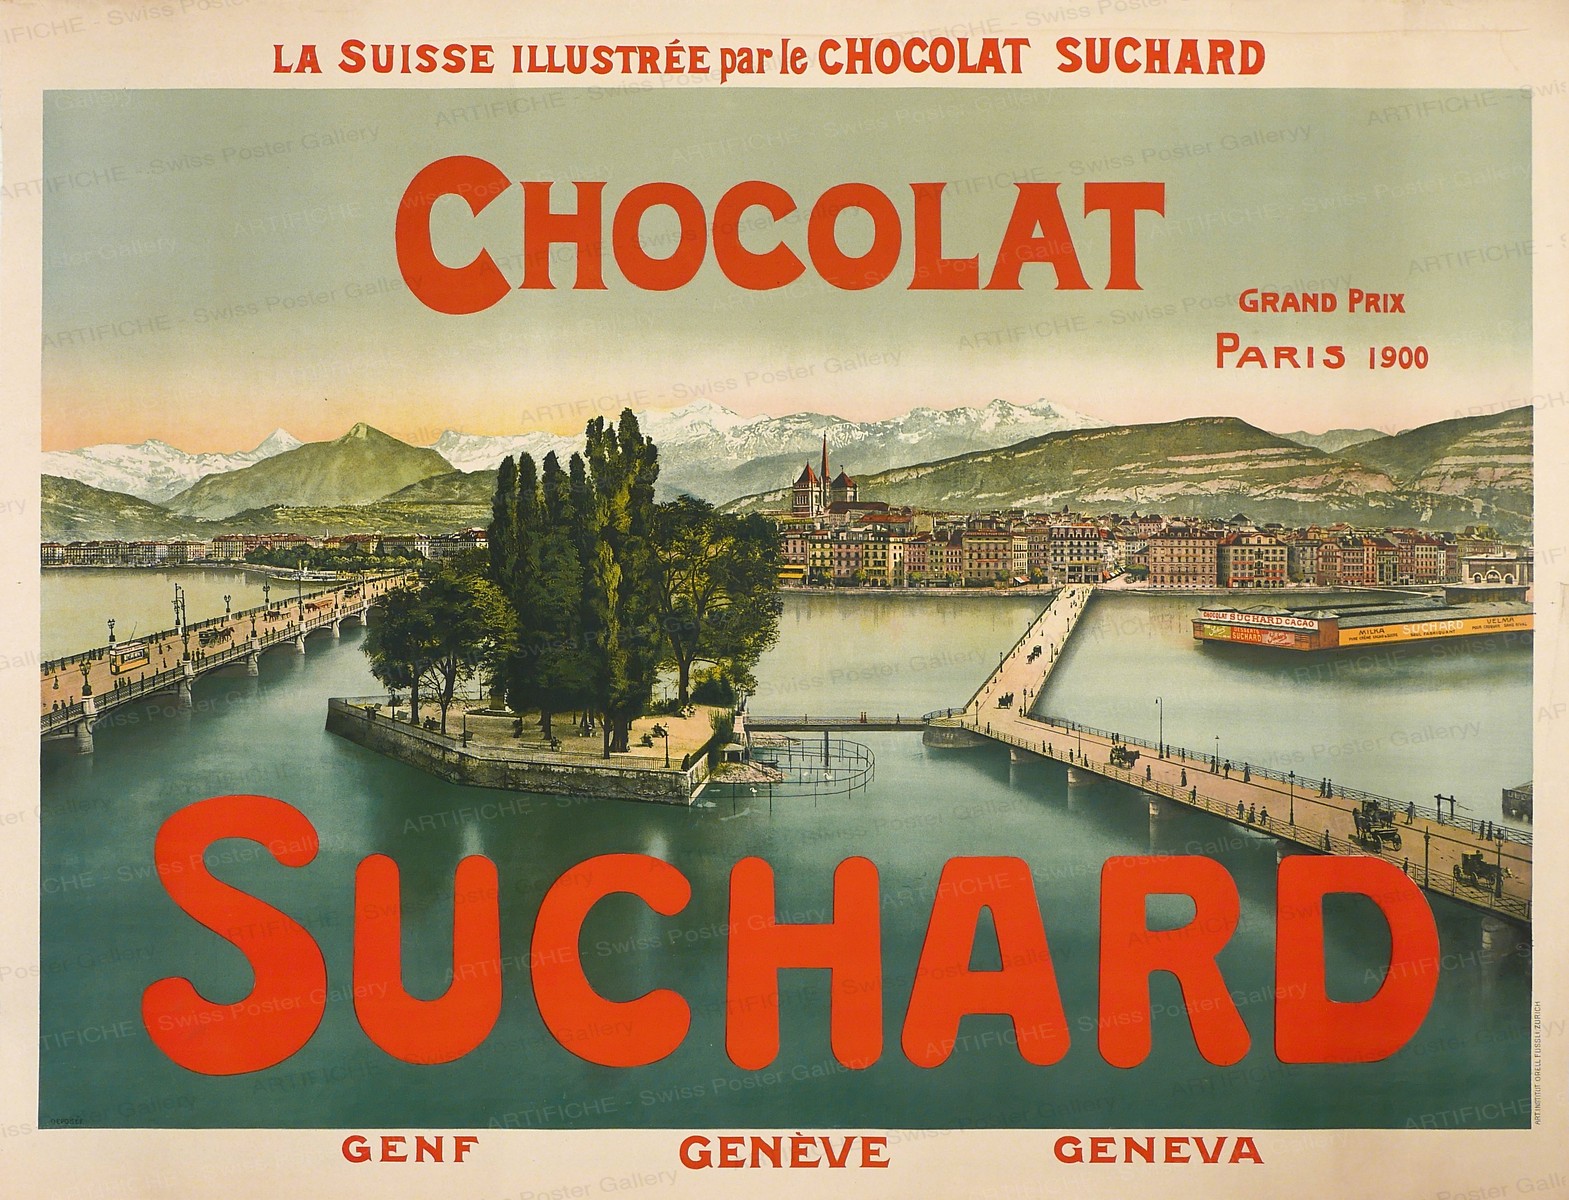 Chocolat SUCHARD Genf Genève Geneva, Artist unknown